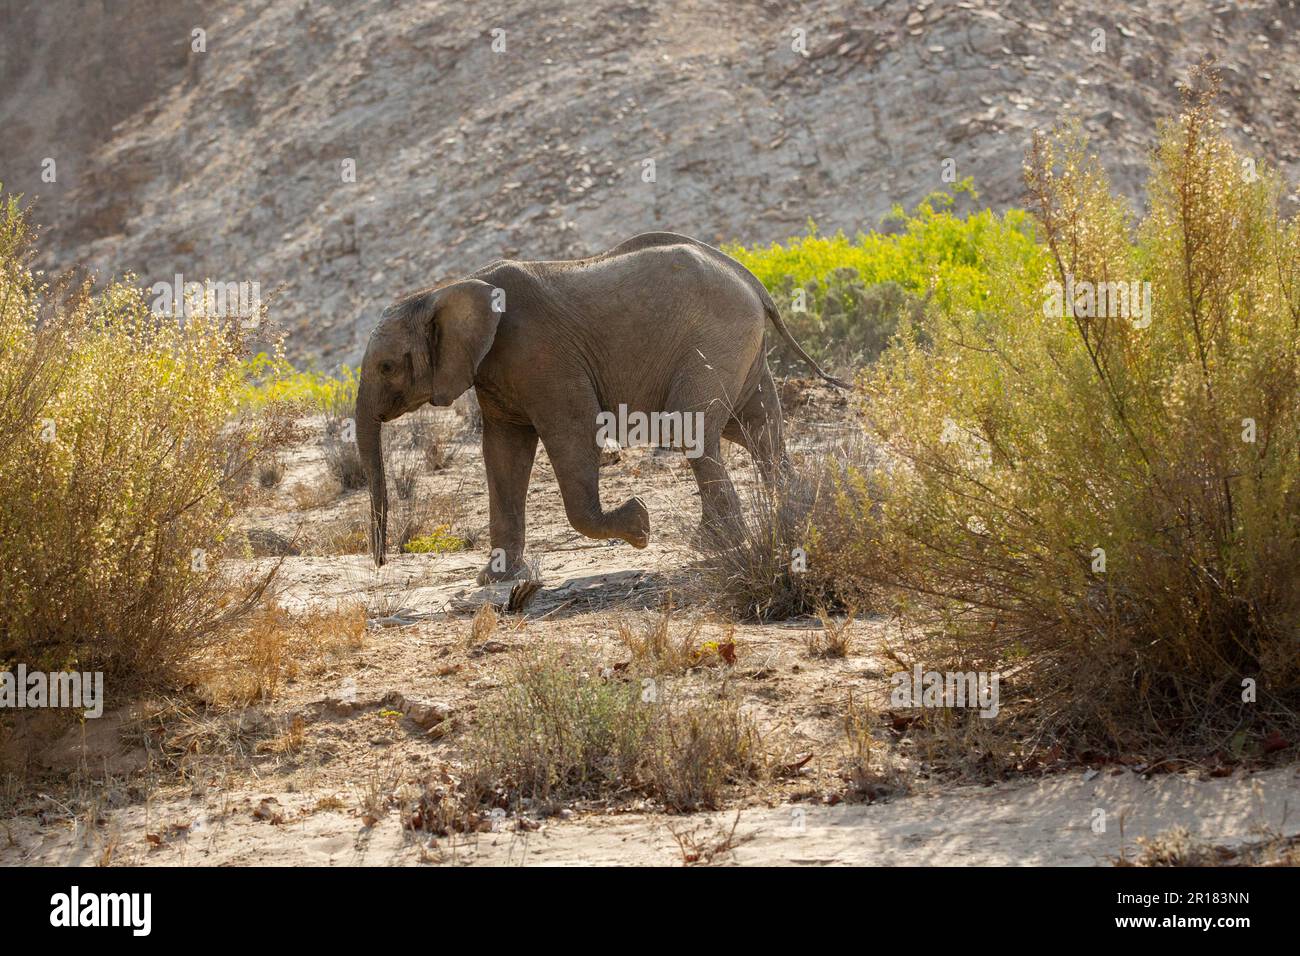 Elefante (Loxodonta africana), camminando attraverso la sabbia profonda nel deserto asciutto letto di fiume. La polvere vola nell'aria. Fiume Hoanib, Damaraland, Namibia, Africa Foto Stock